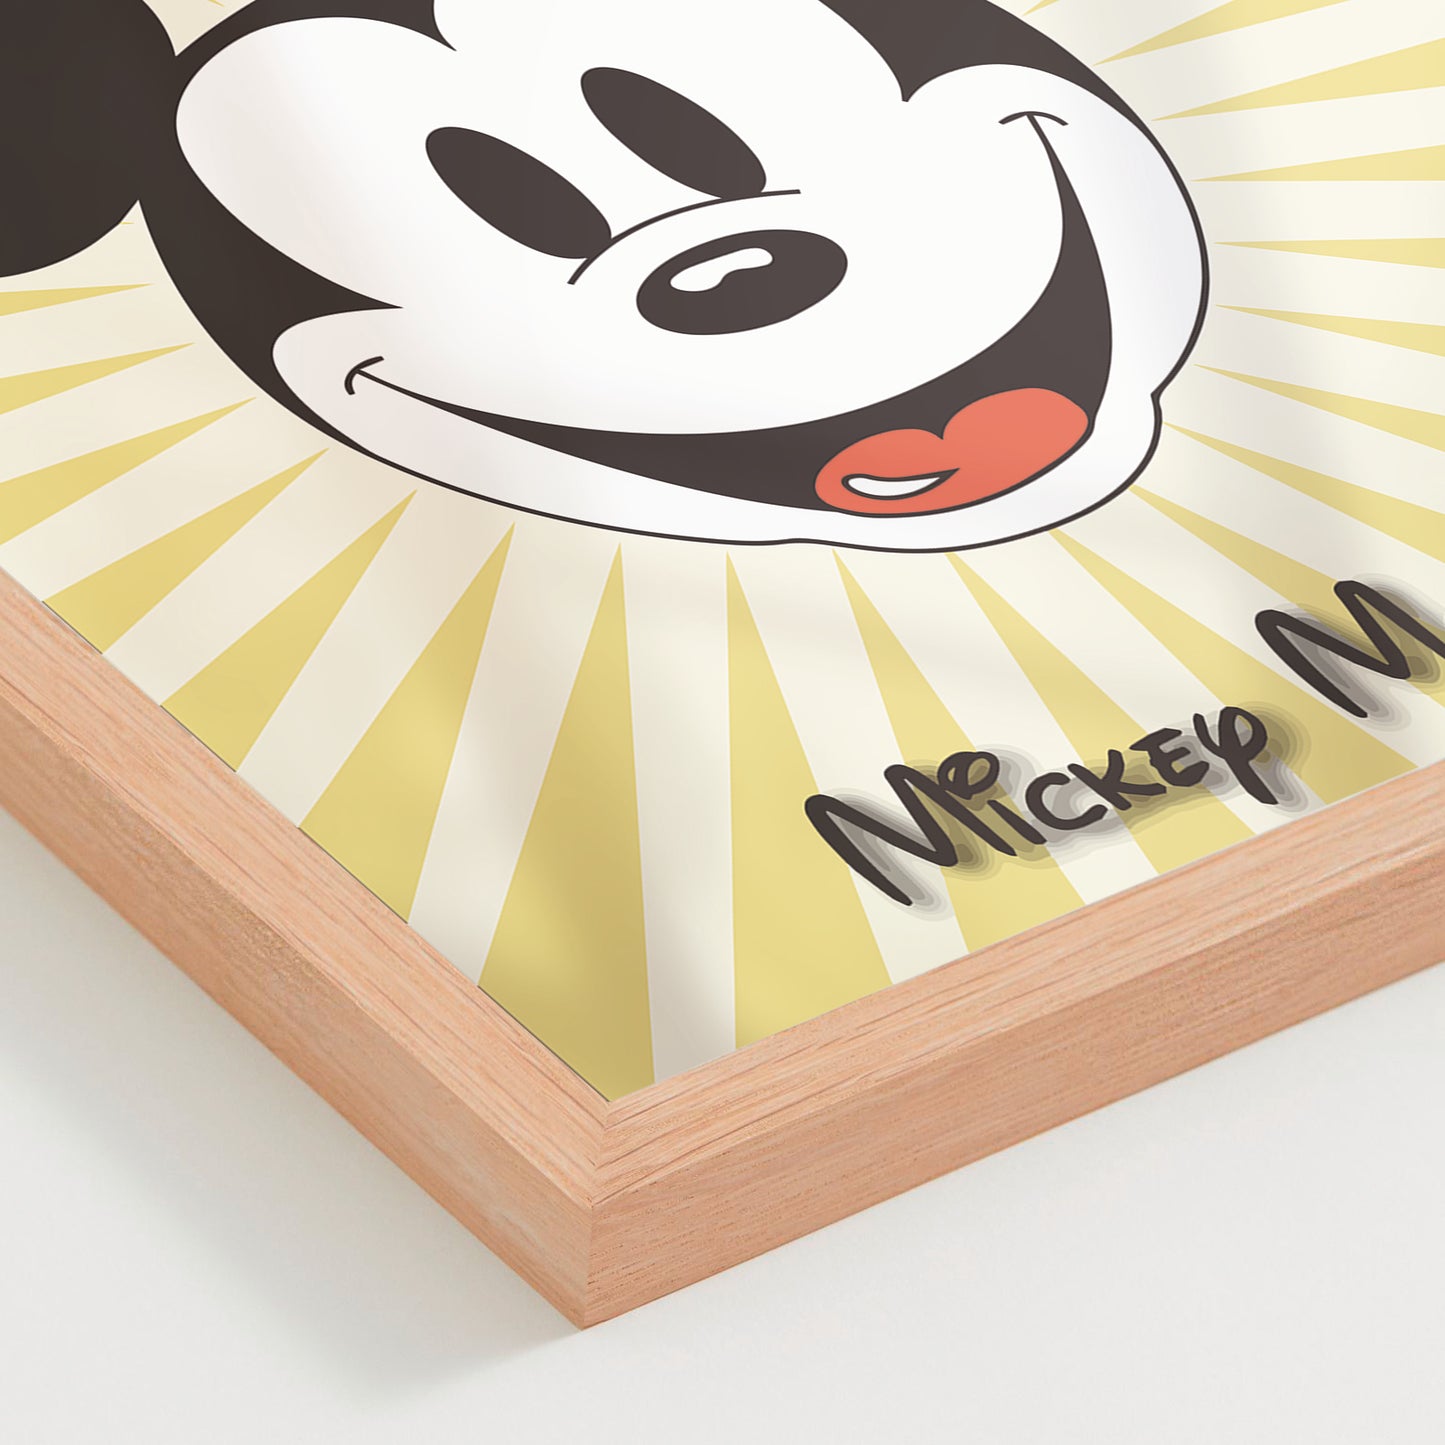 Micky Mouse 01